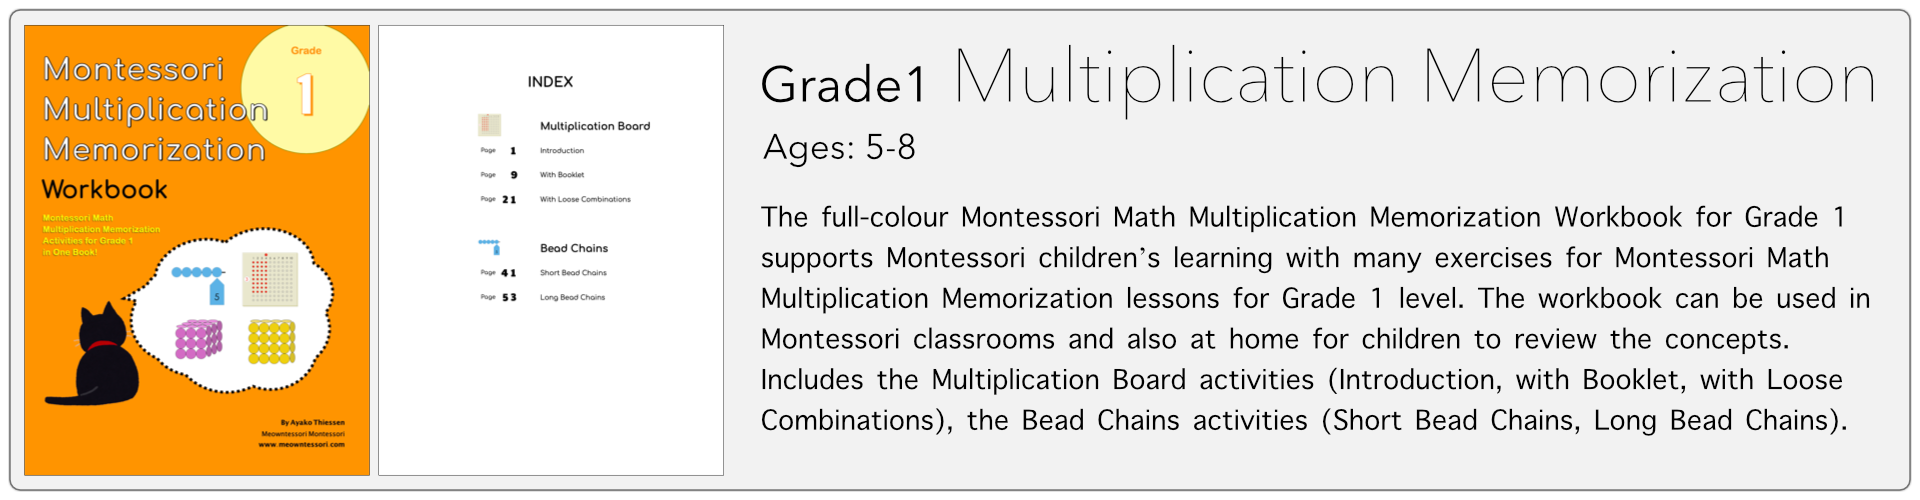 grade1 multiplication memorization